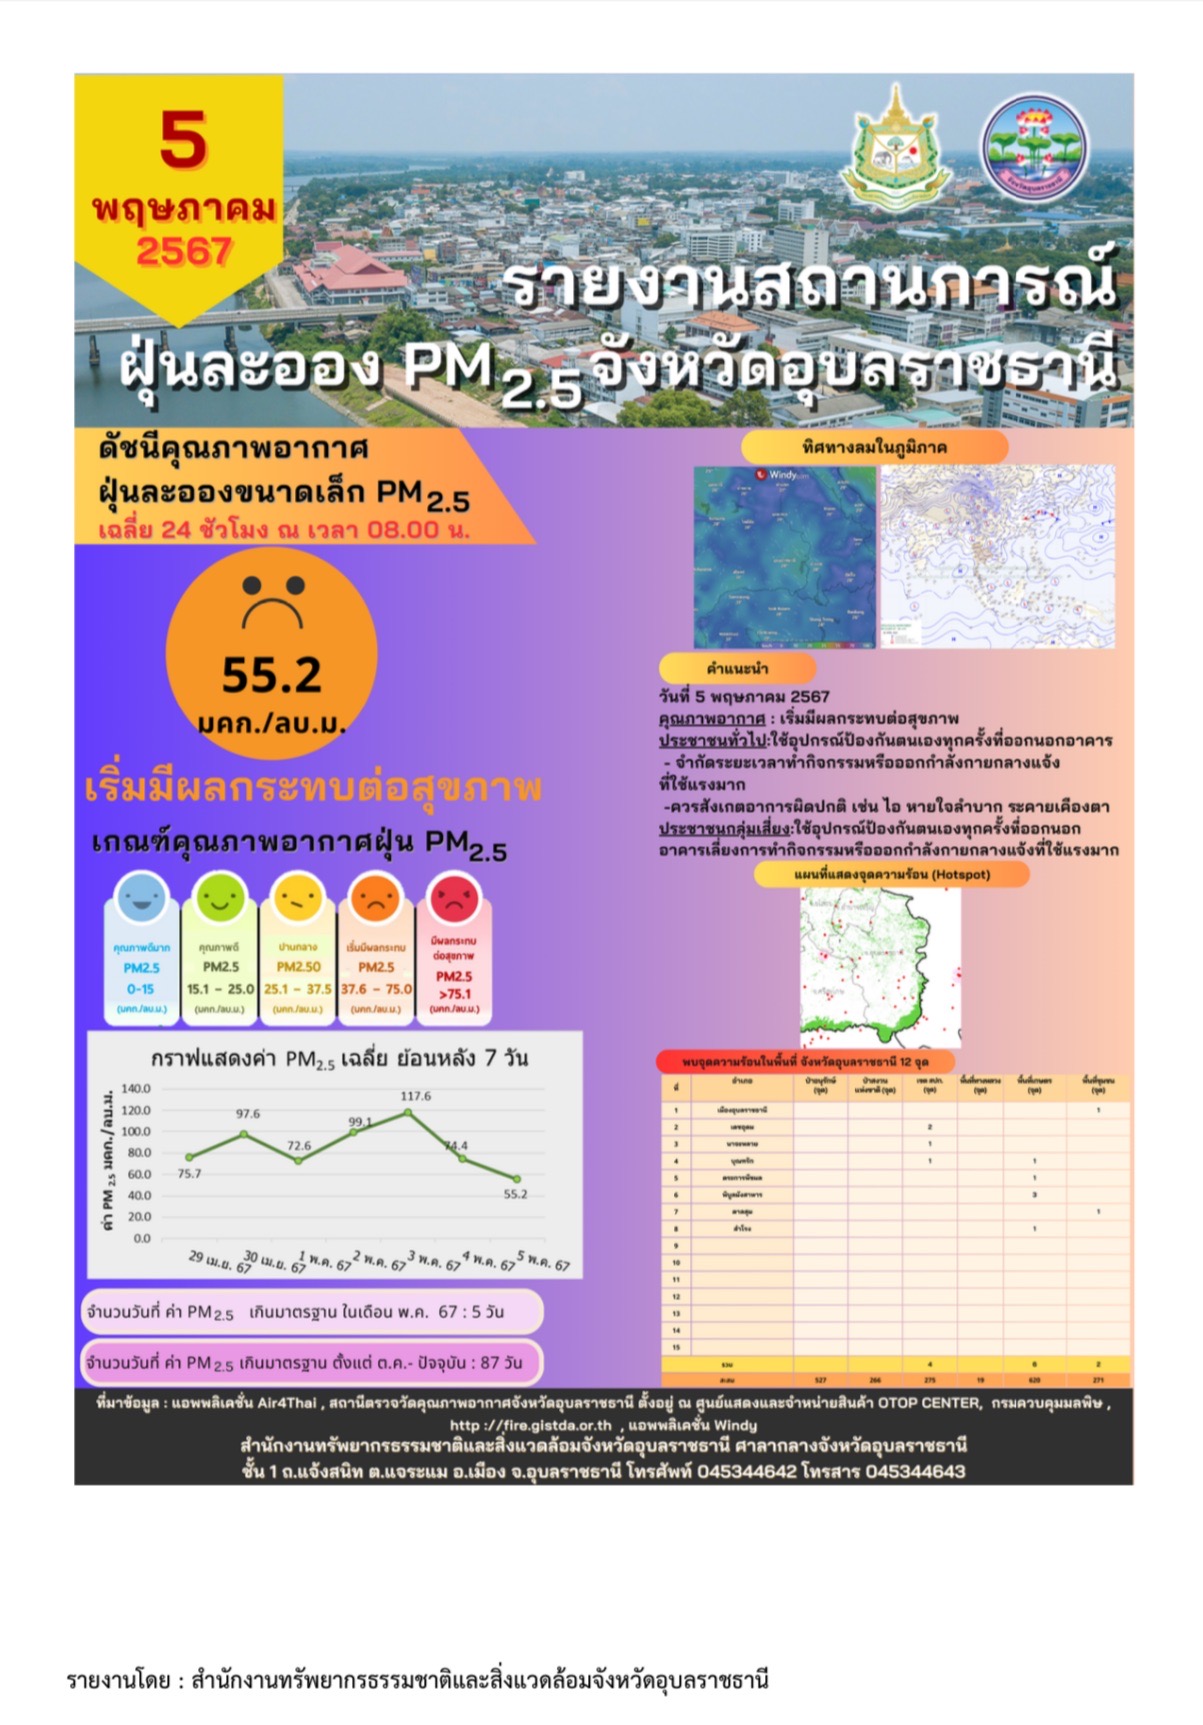 วันนี้ จ.อุบลฯ พบค่าฝุ่น PM 2.5 สูงเกินมาตรฐาน 